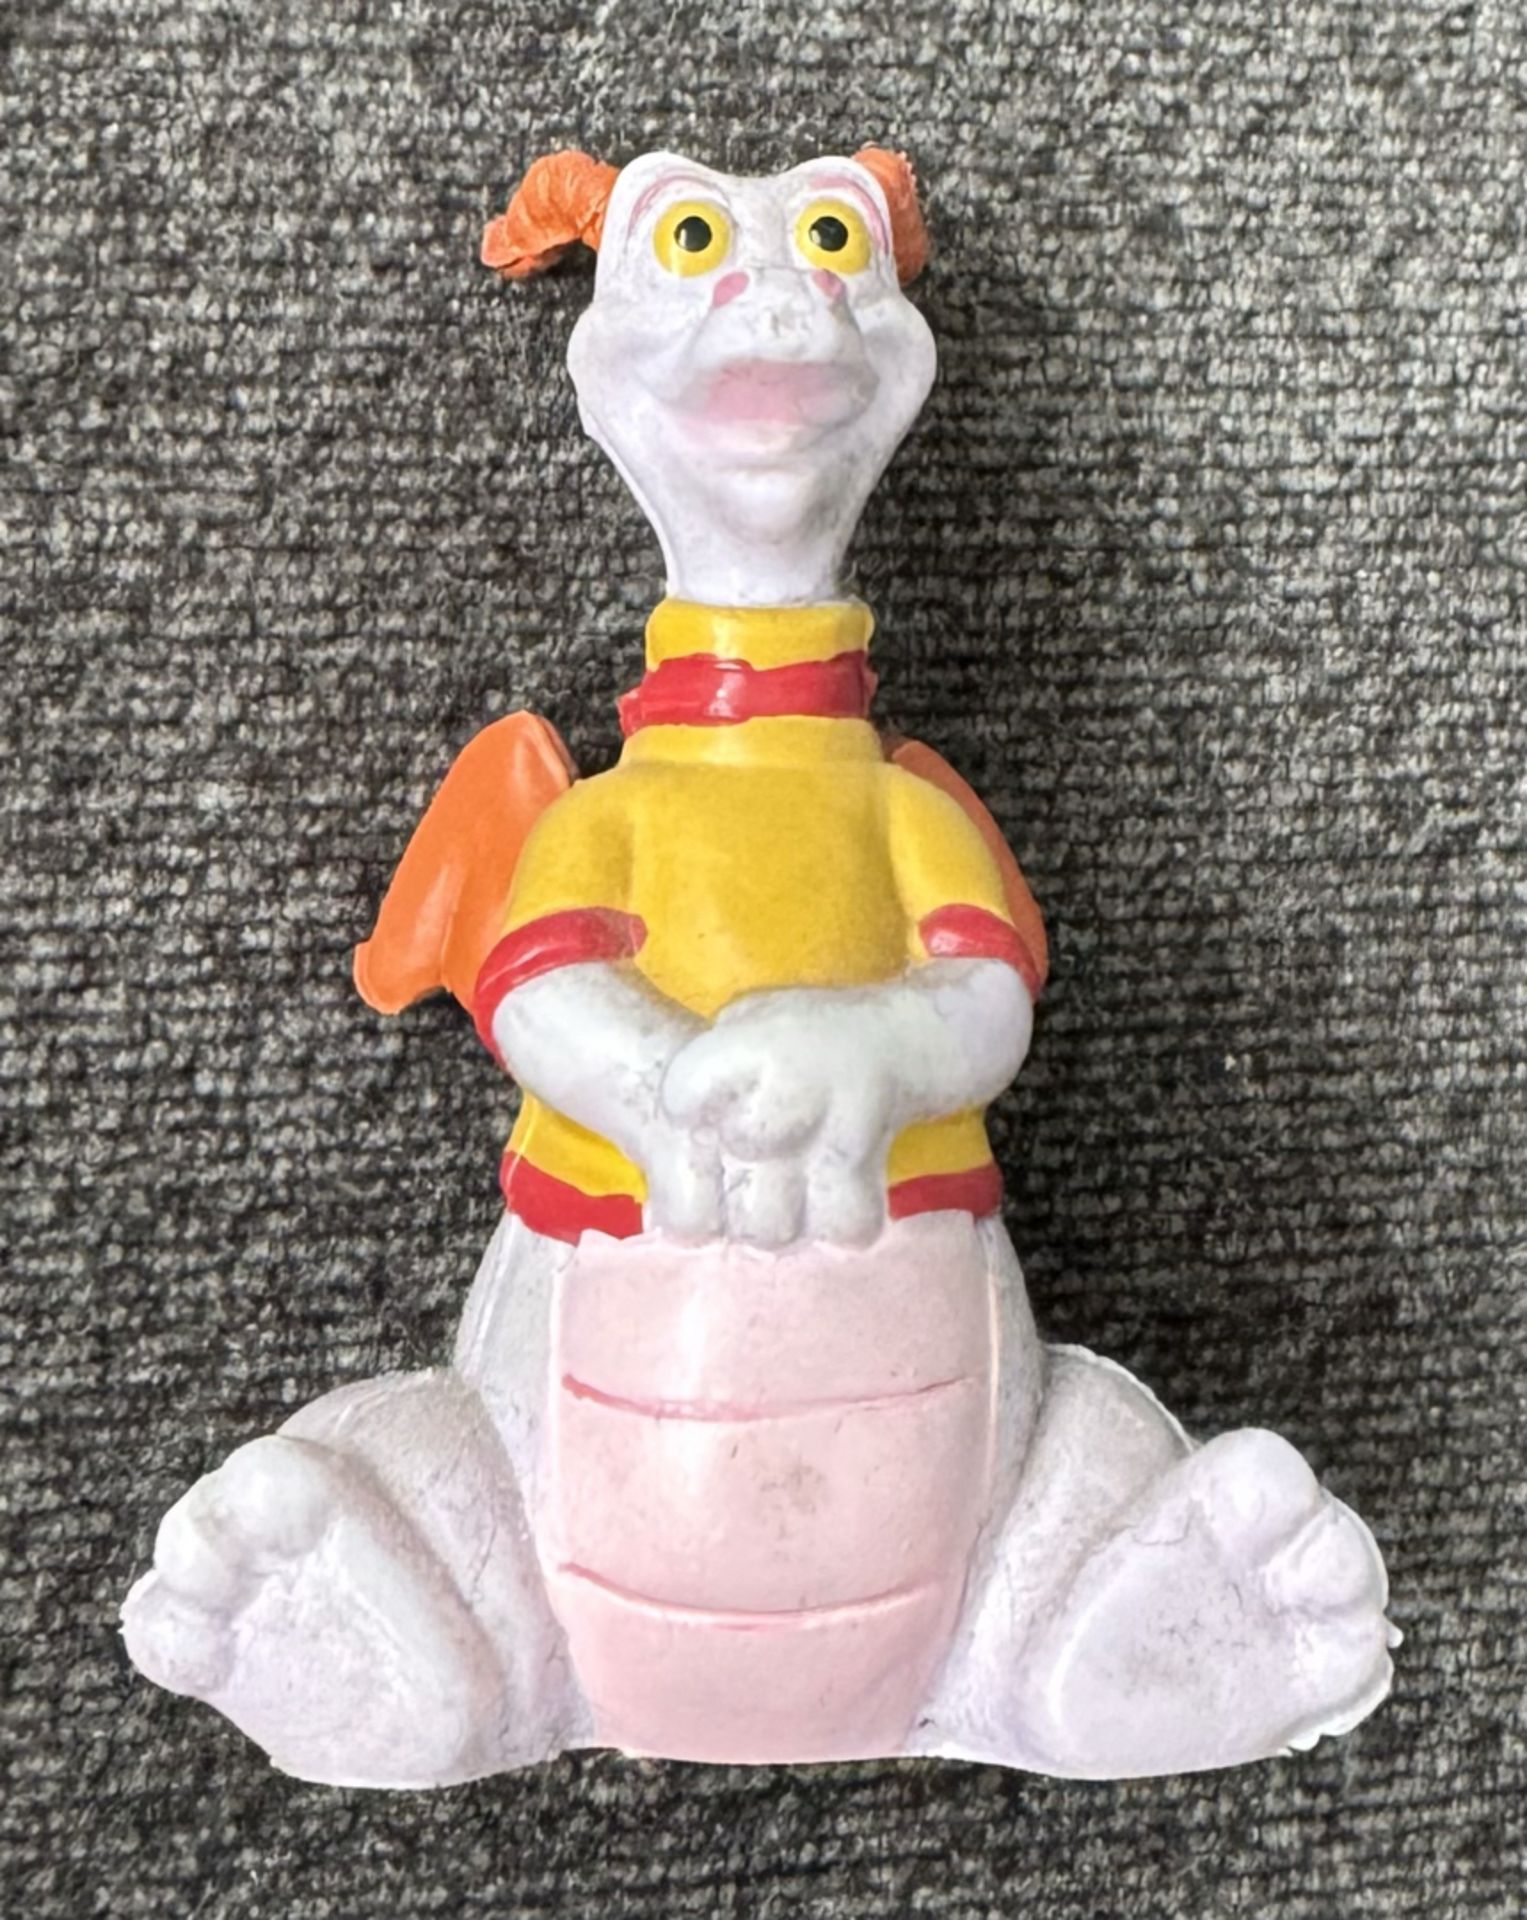 Disney FIGMENT DRAGON PVC Figure Cake Topper Toy - Rare 1982 HONG KONG